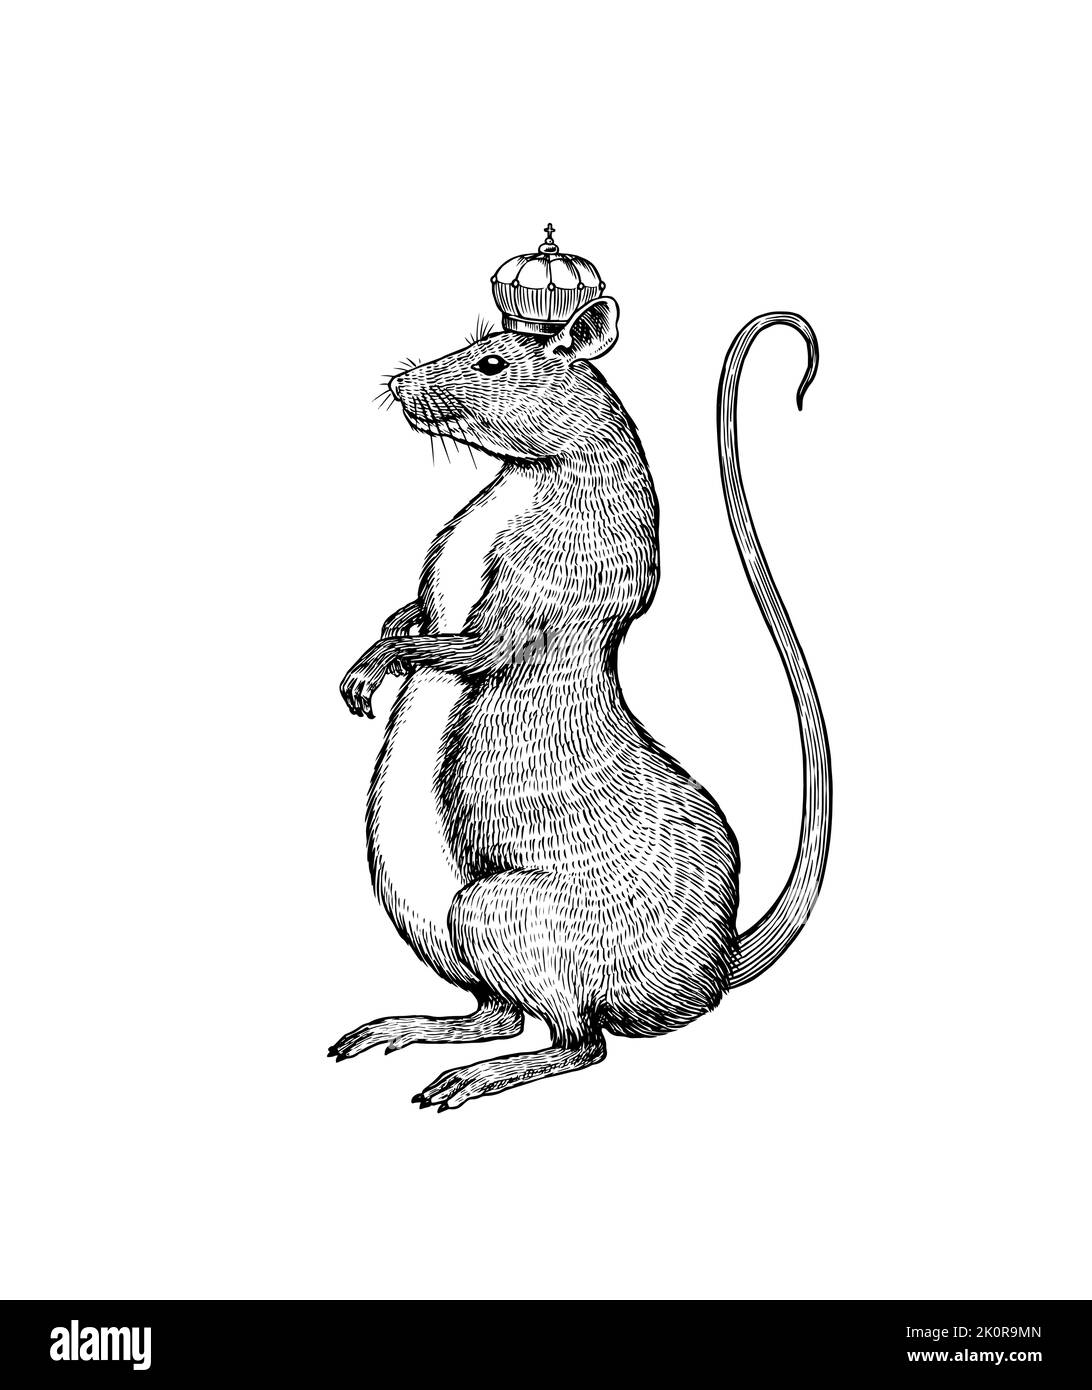 Roi de rat ou souris. Animal sauvage graphique. Croquis vintage dessiné à la main. Éléments de grunge gravés. Illustration de Vecteur